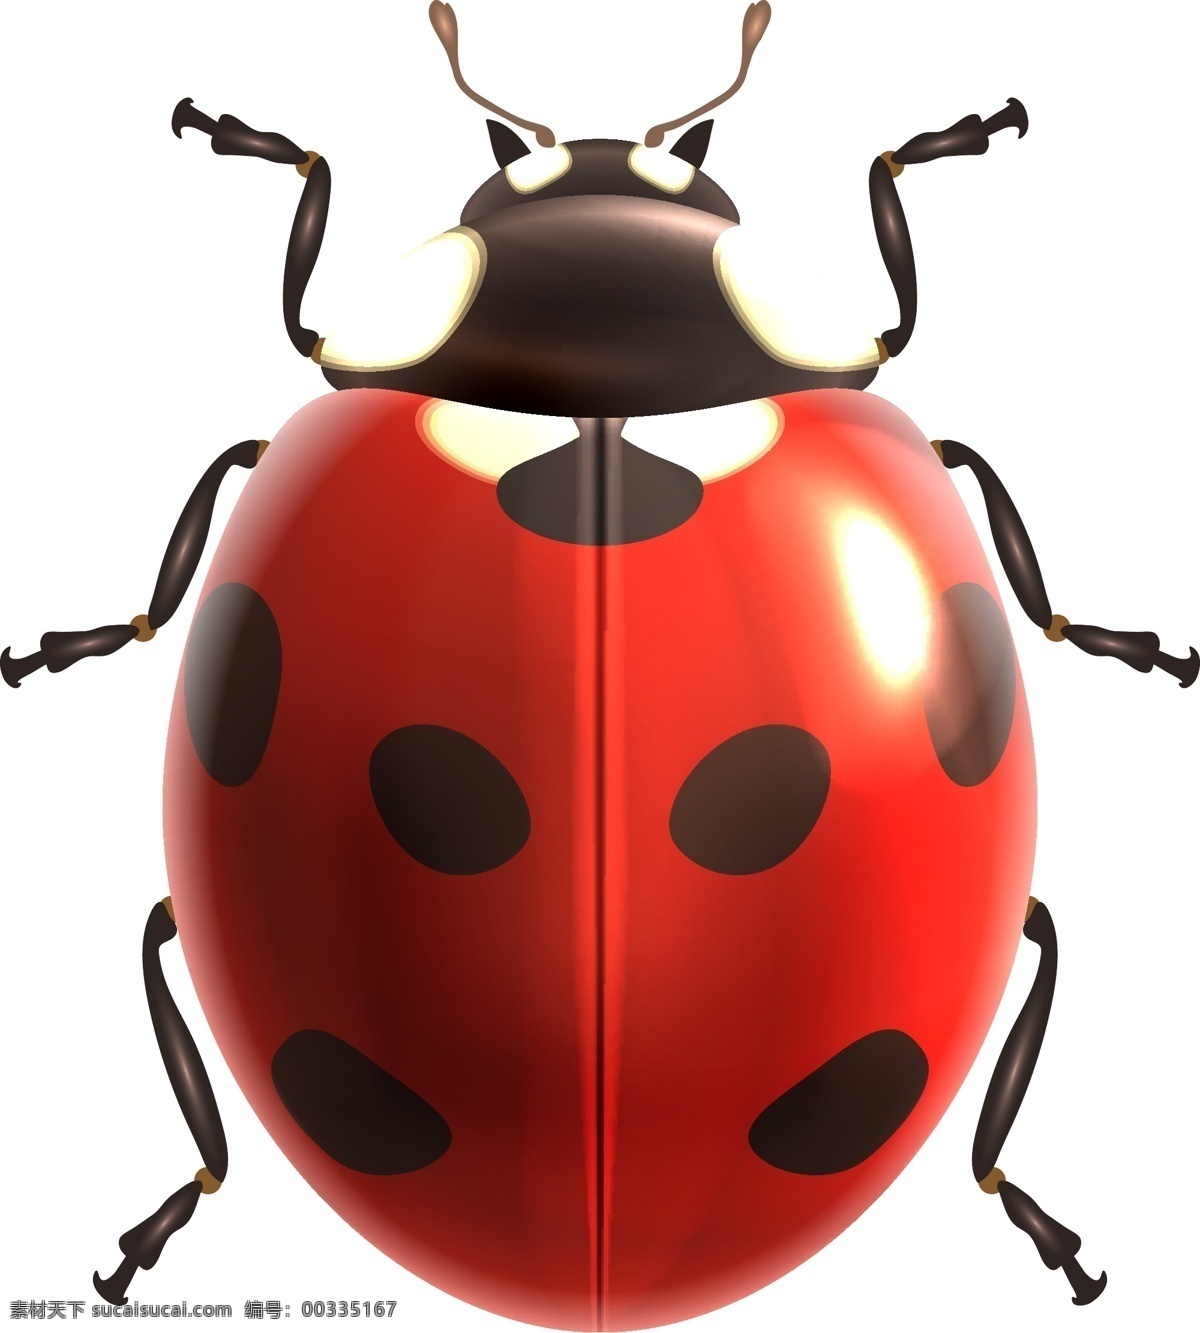 红 壳 七星 瓢虫 可爱 元素 设计素材 创意设计 动物 小动物 卡通 矢量素材 昆虫